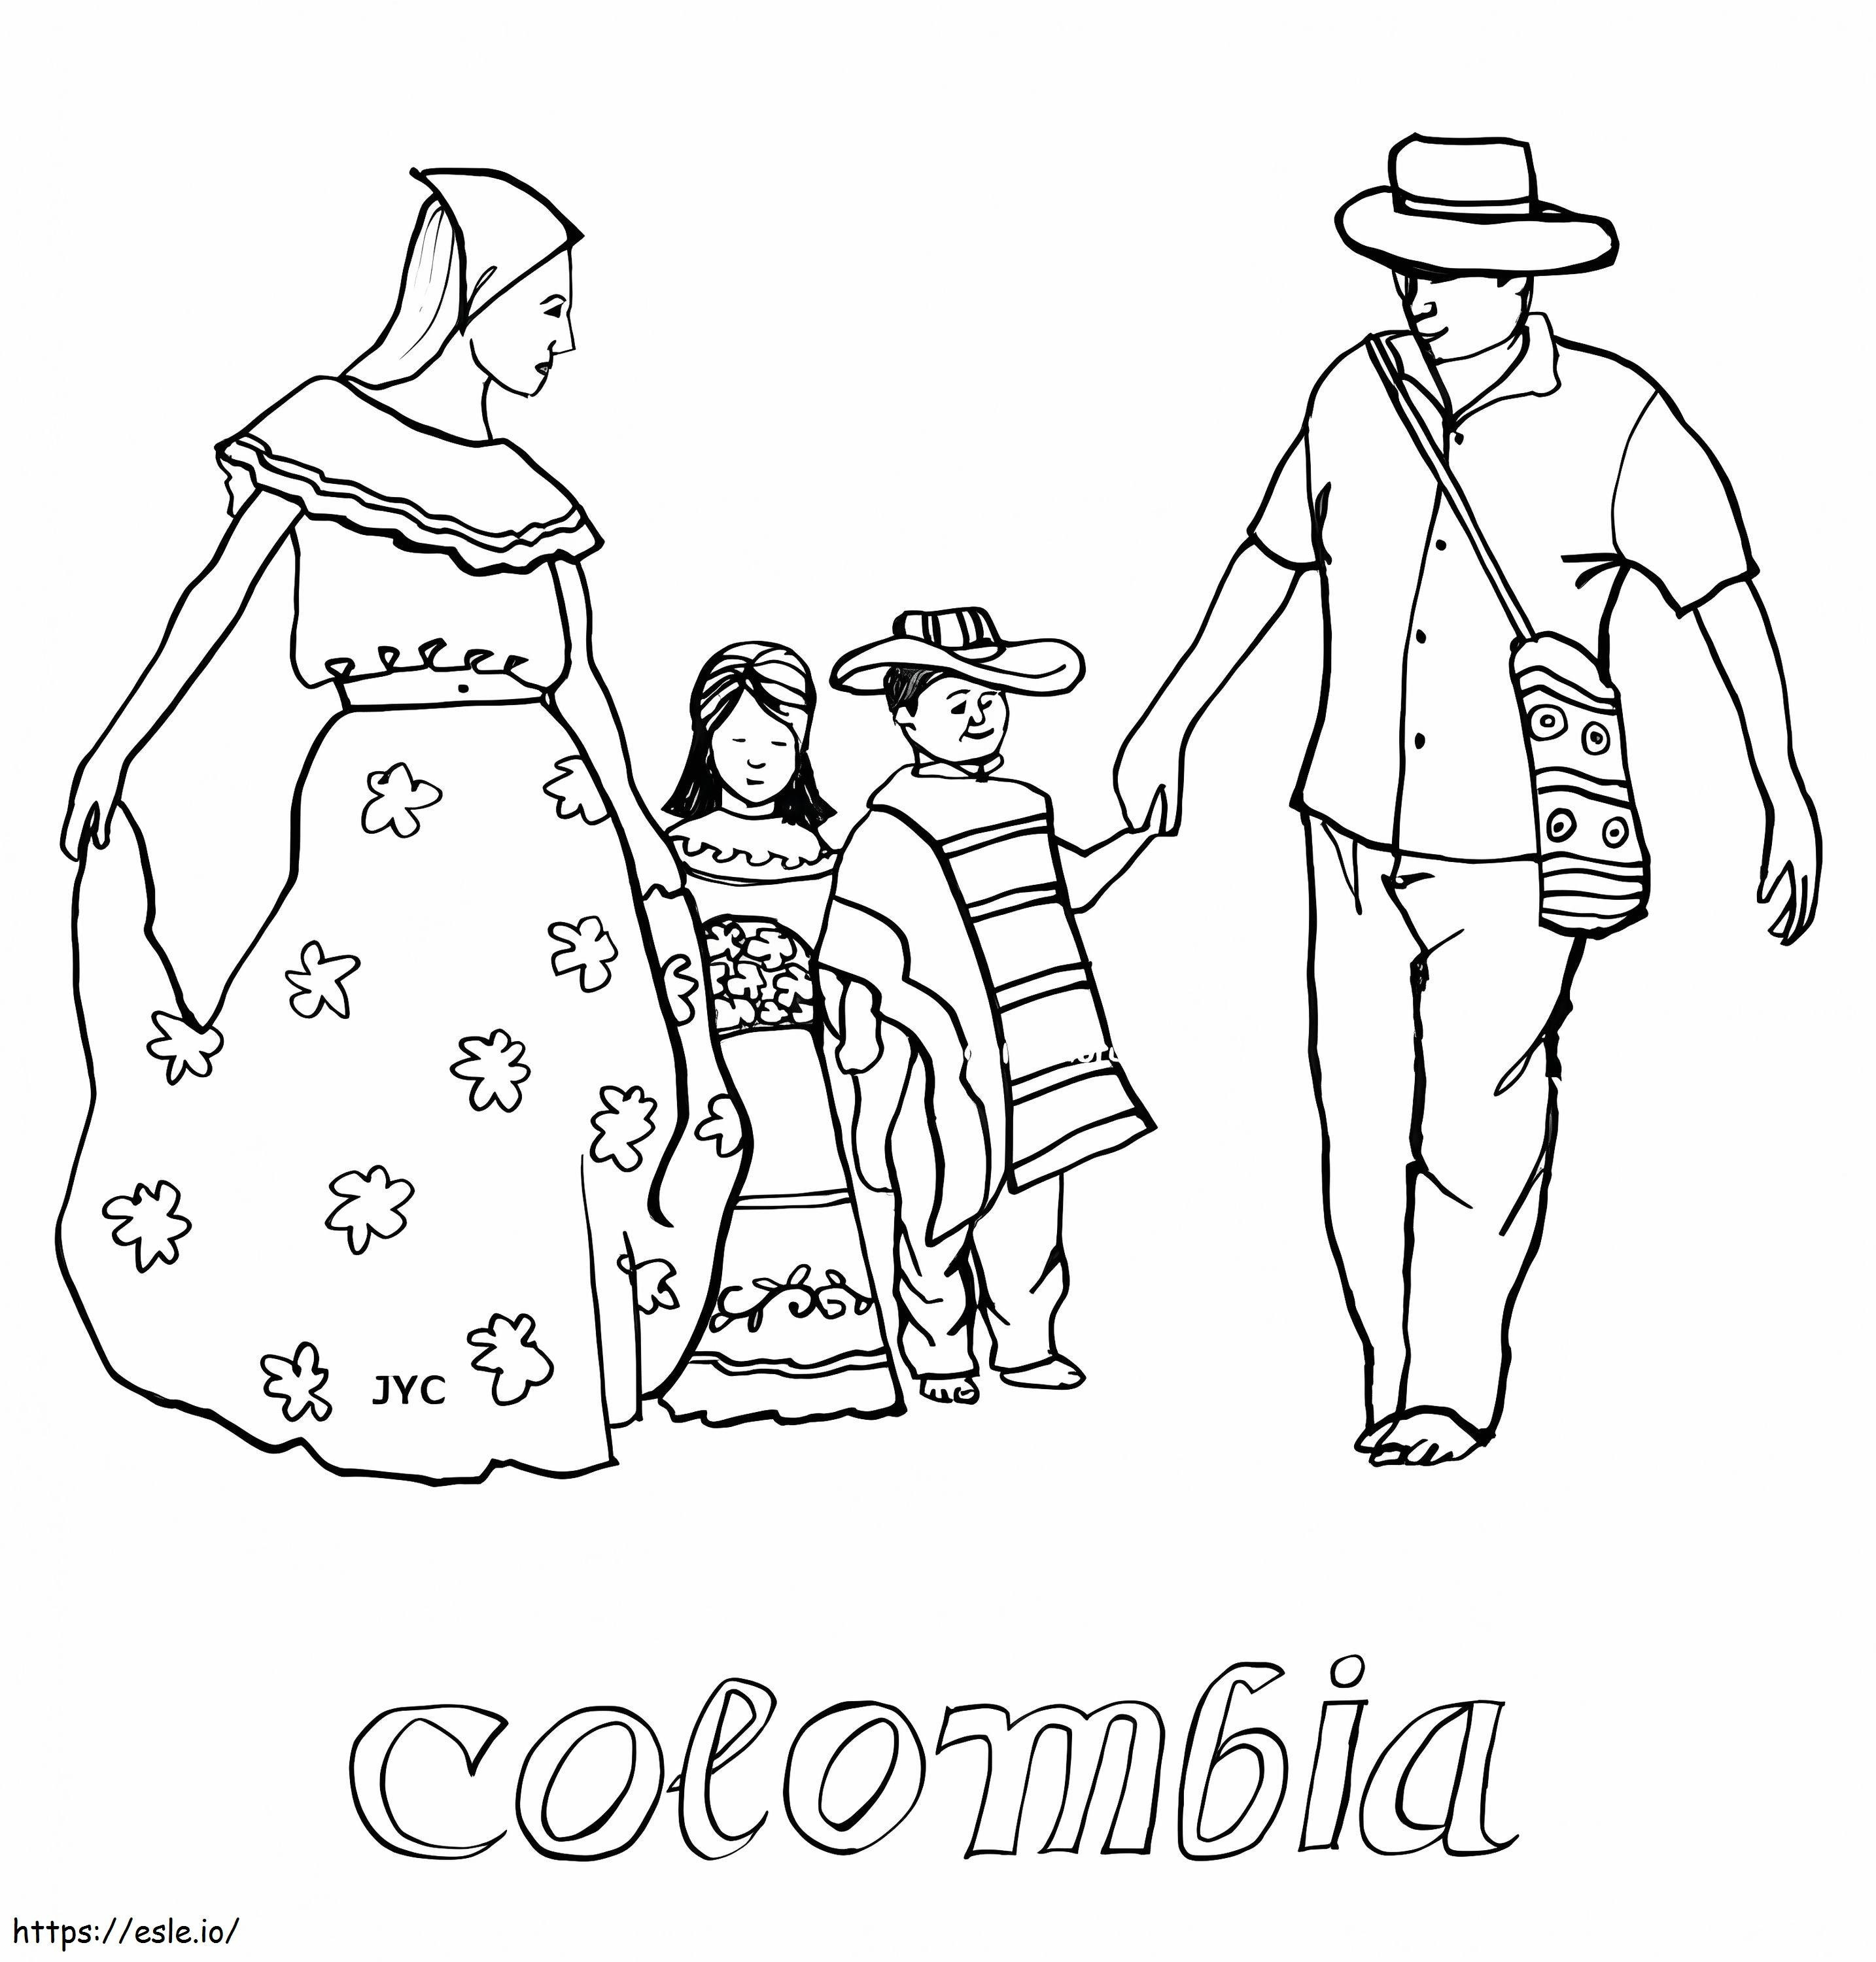 Kolumbijska rodzina kolorowanka